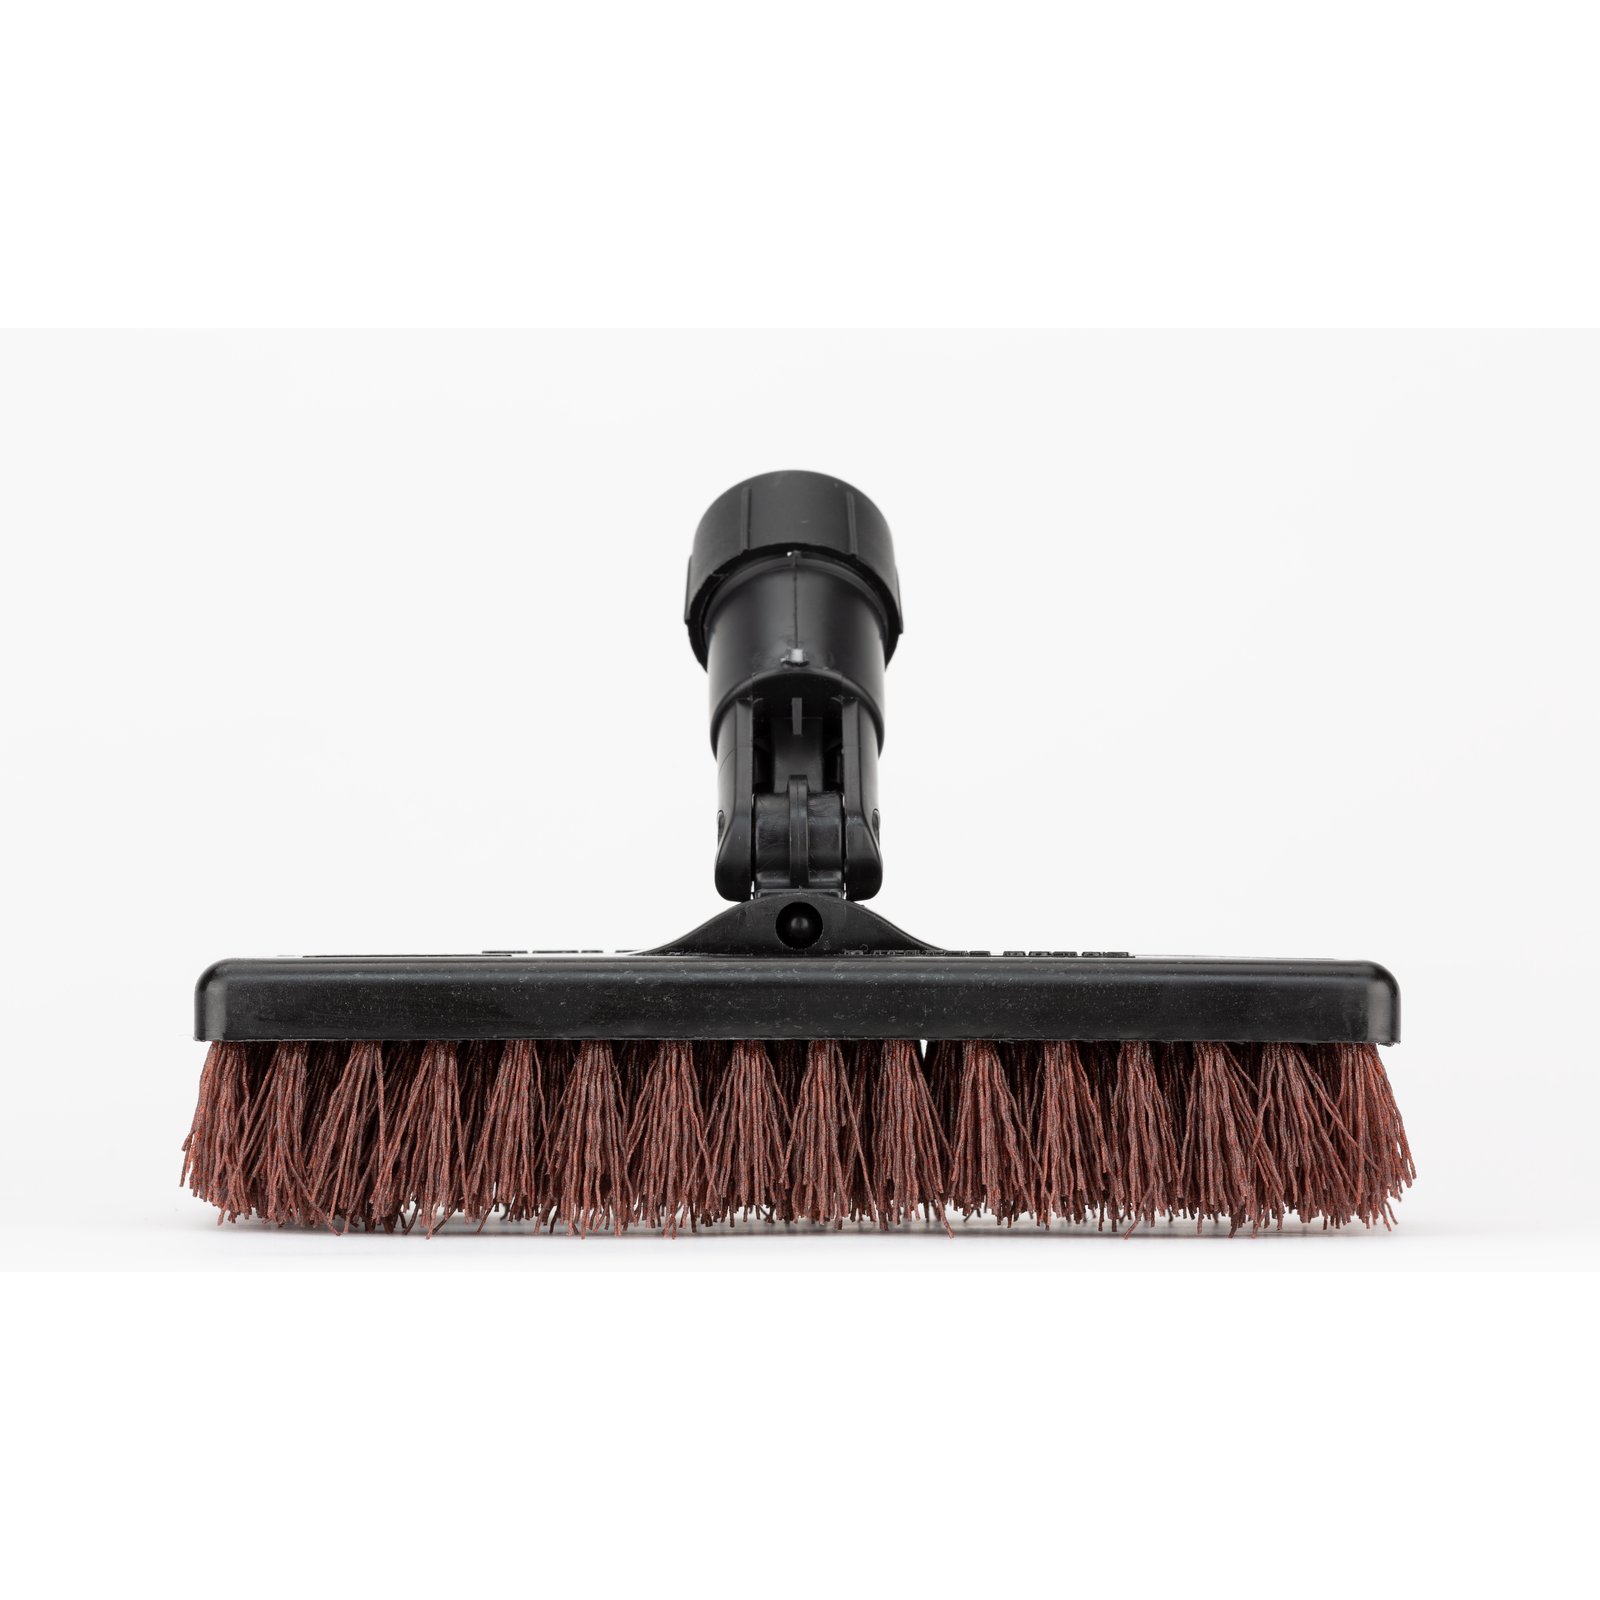 PS 30 Power Scrub Brush